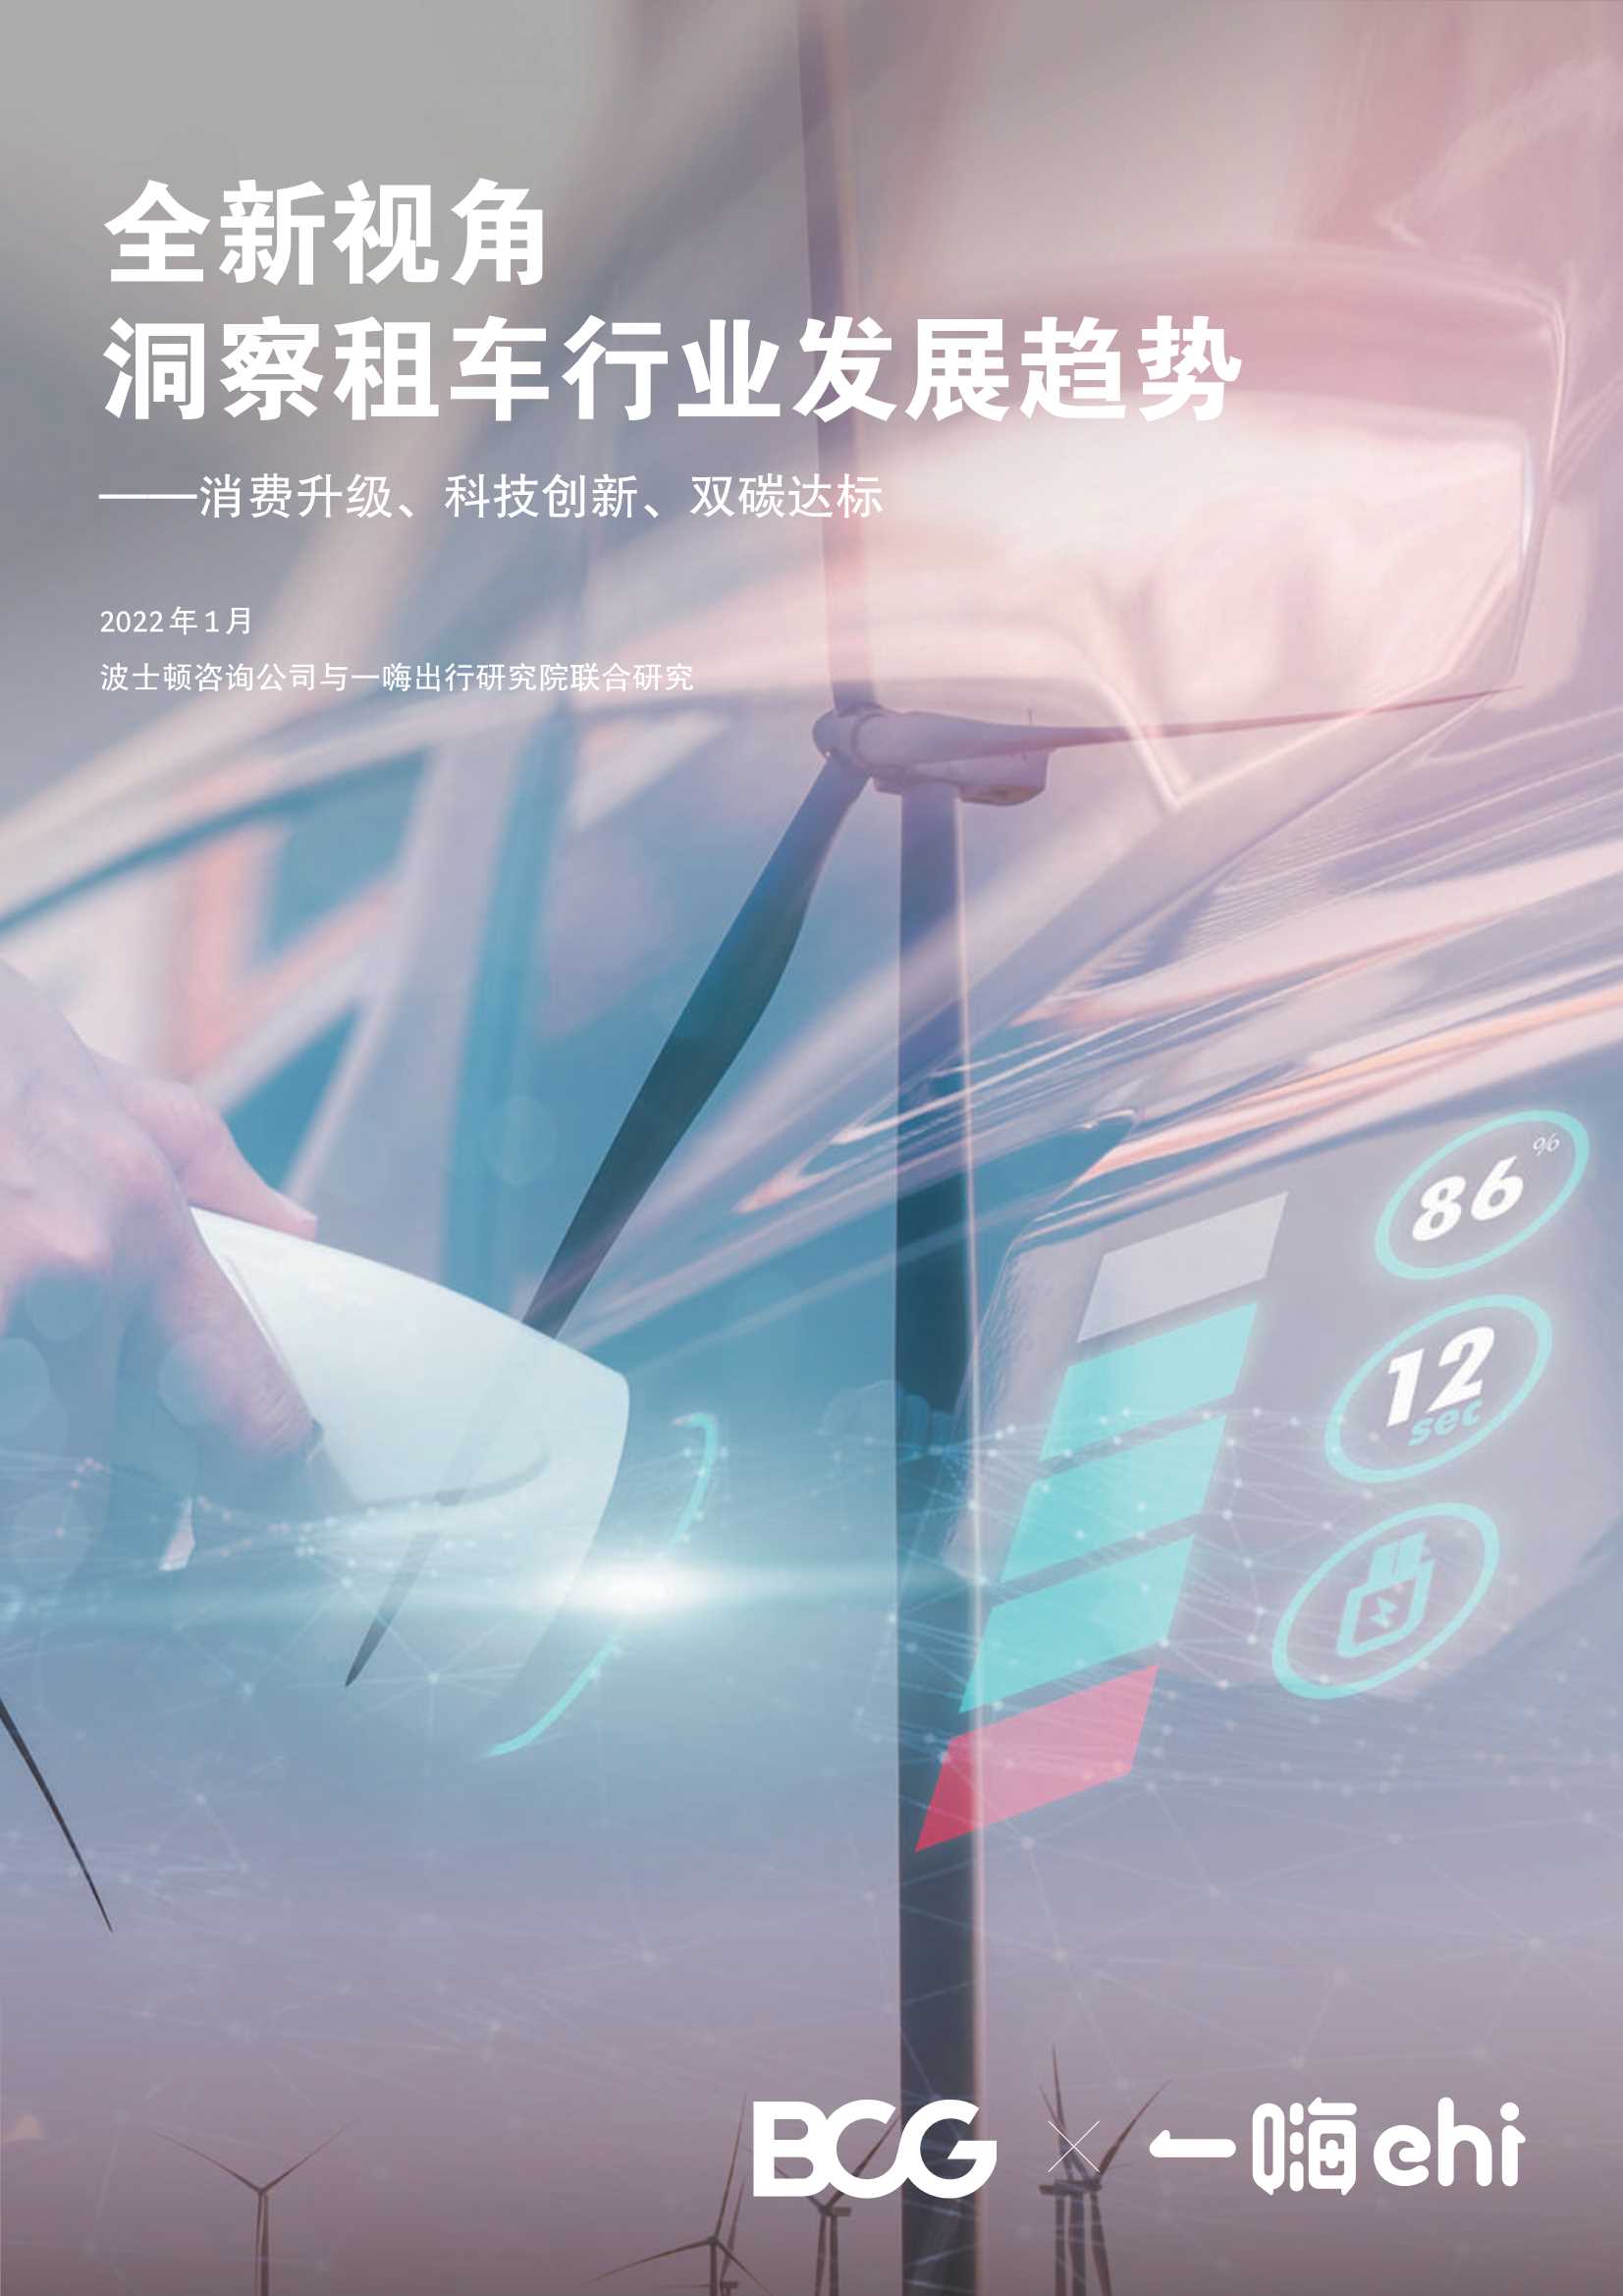 BCG-全新视角洞察租车行业发展趋势-2022.01-32页